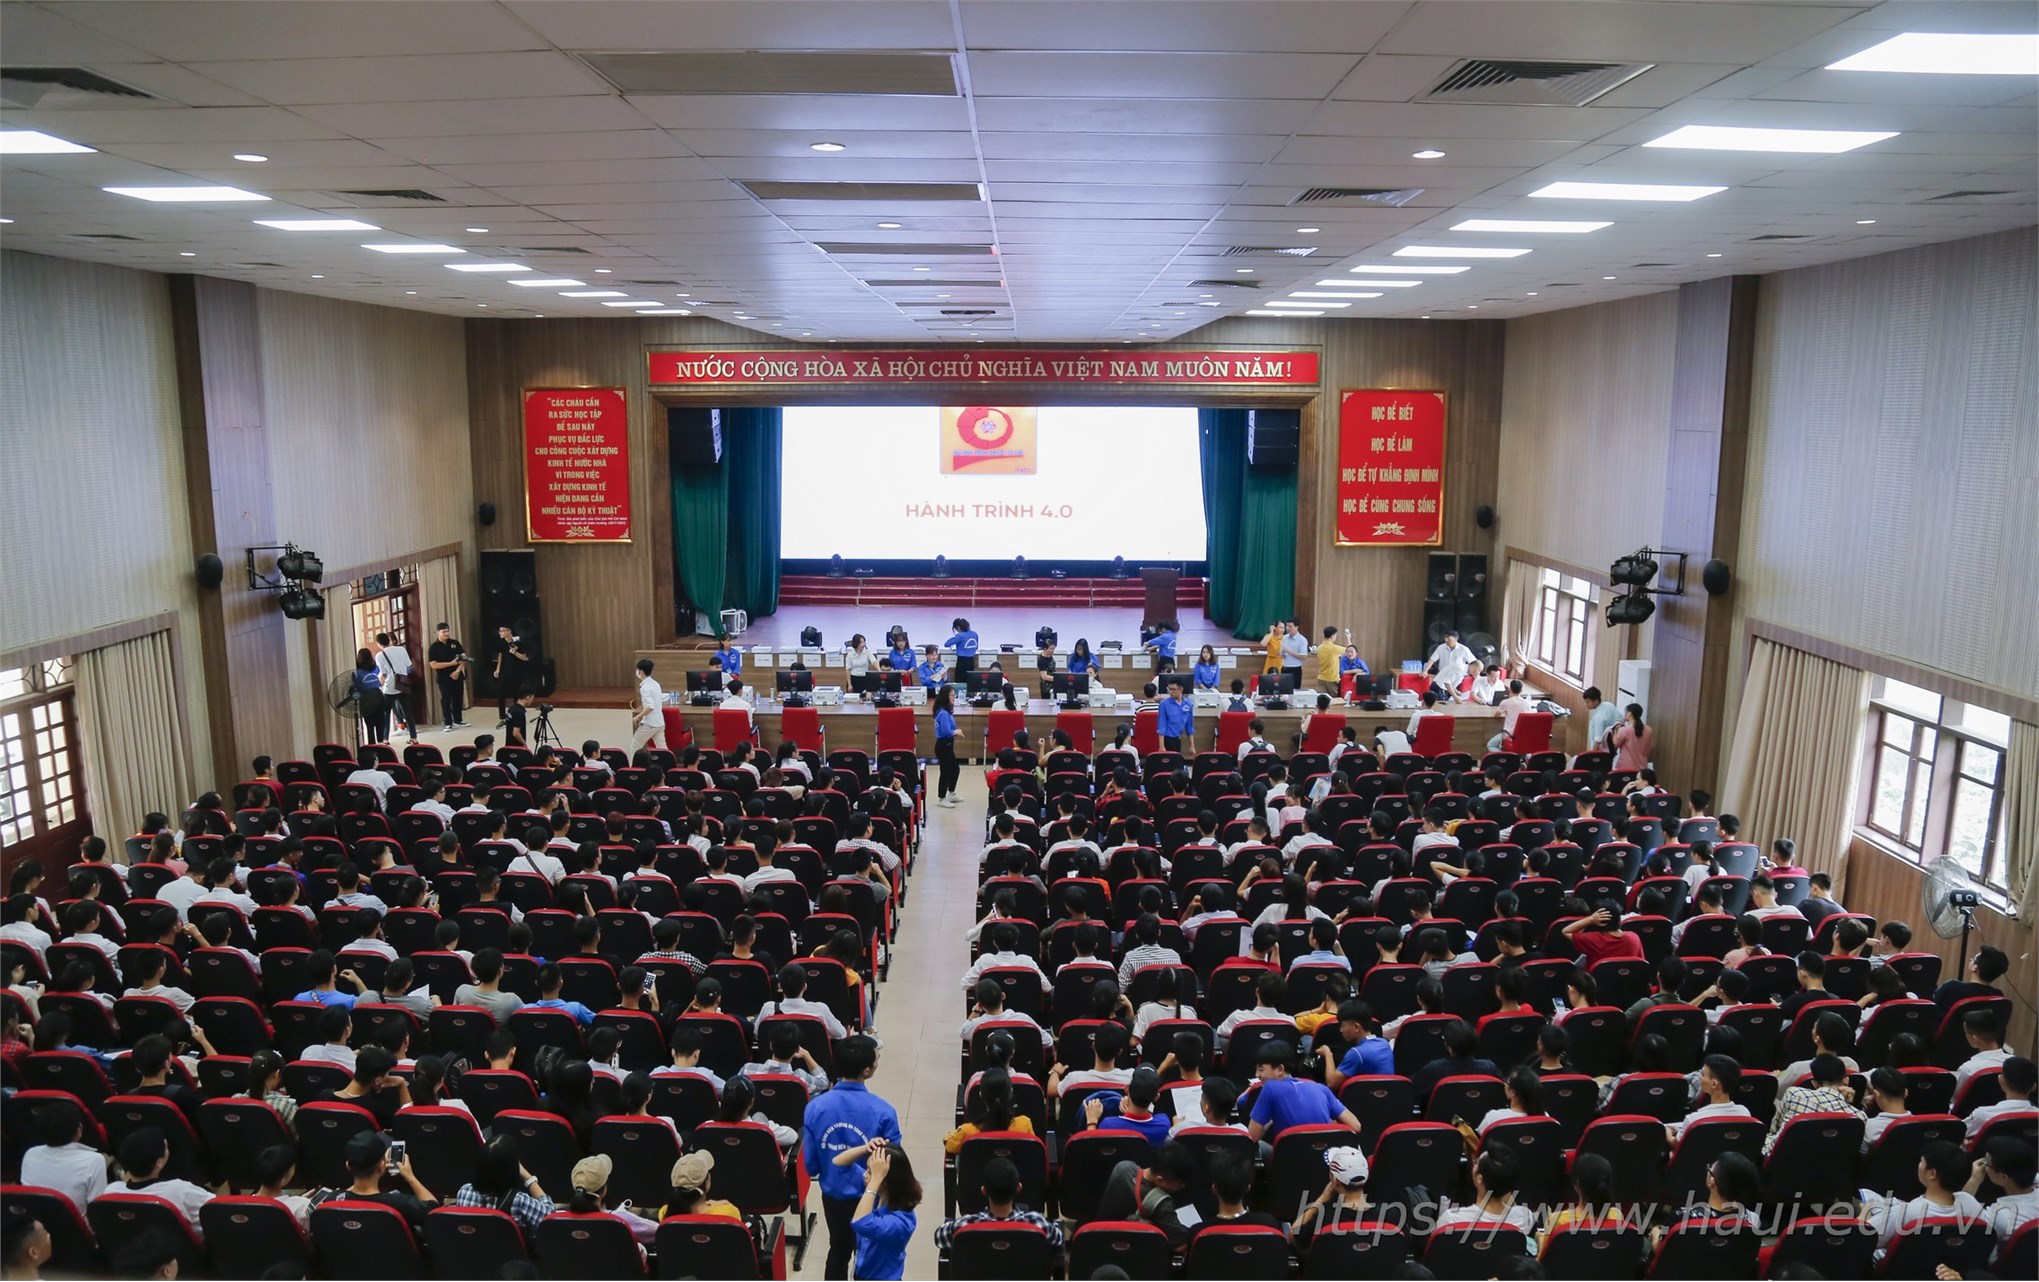 Thí sinh làm thủ tục nhập học tại Đại học Công nghiệp Hà Nội năm 2019